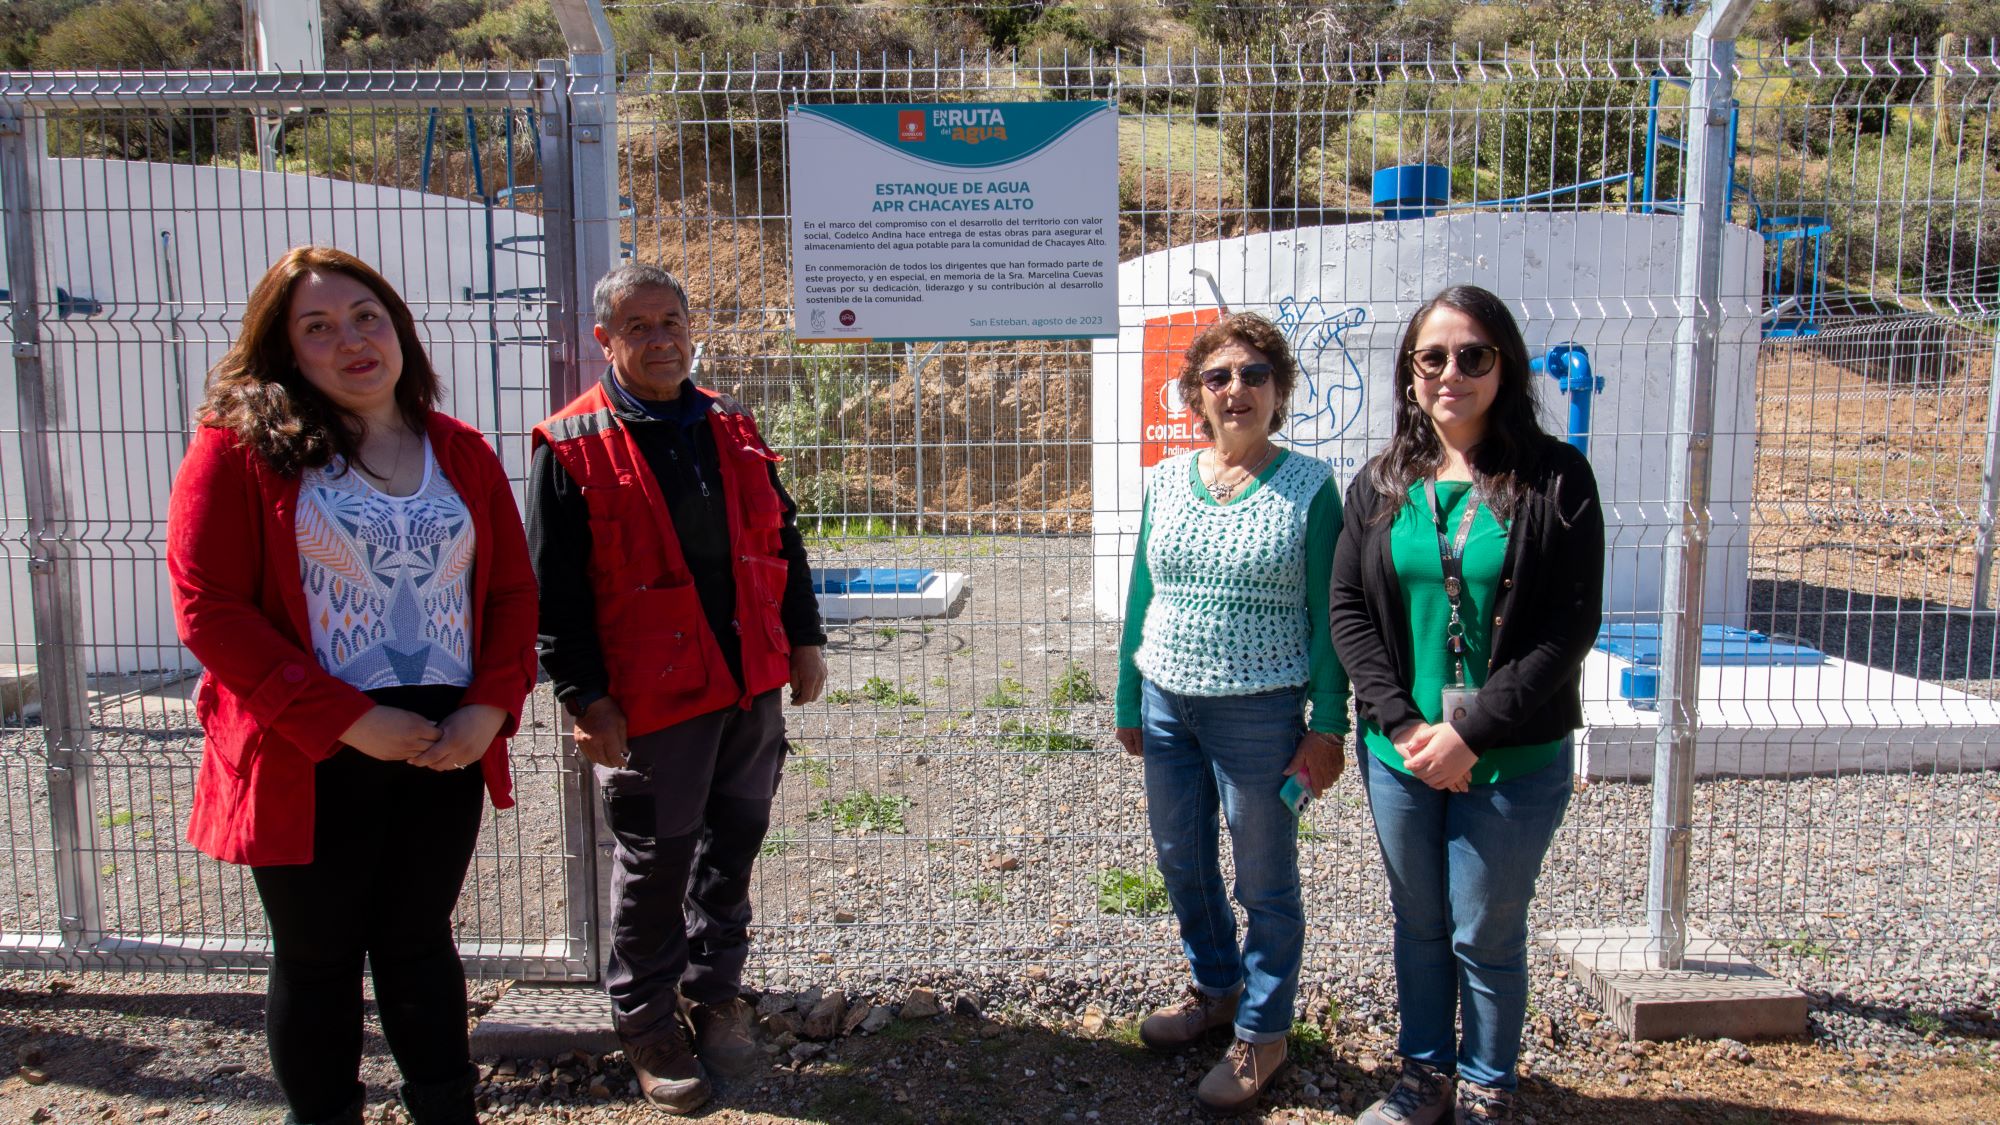 SAN ESTEBAN: Familias de Los Chacayes Alto mejoran su acceso al agua potable gracias a obras que impulsó Codelco Andina en el APR local